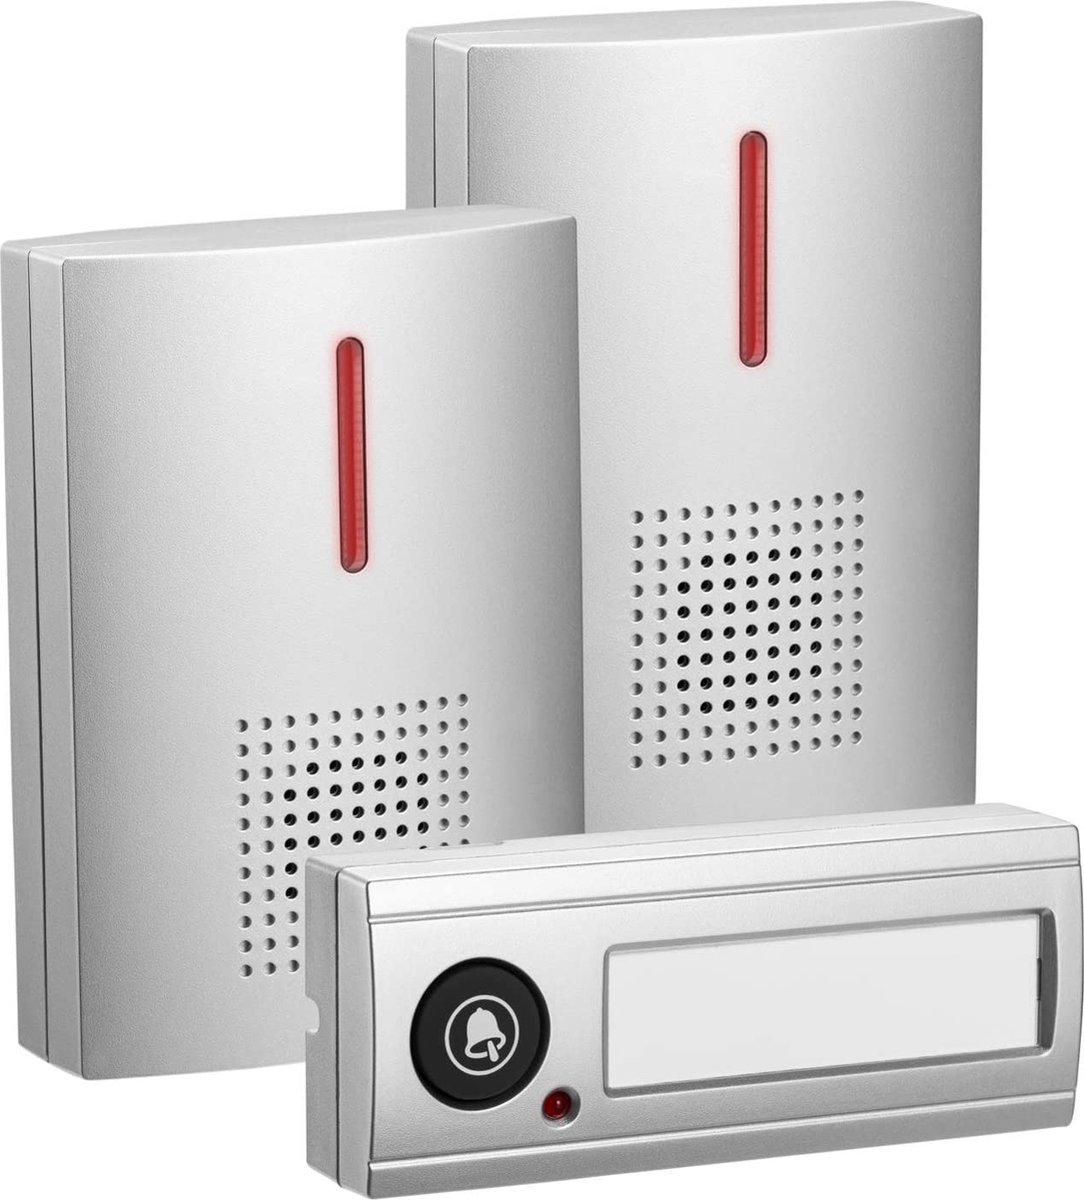 Deurbel - draadloze deurbel met ontvangers – wireless doorbell – duurzaam - eenvoudig te installeren